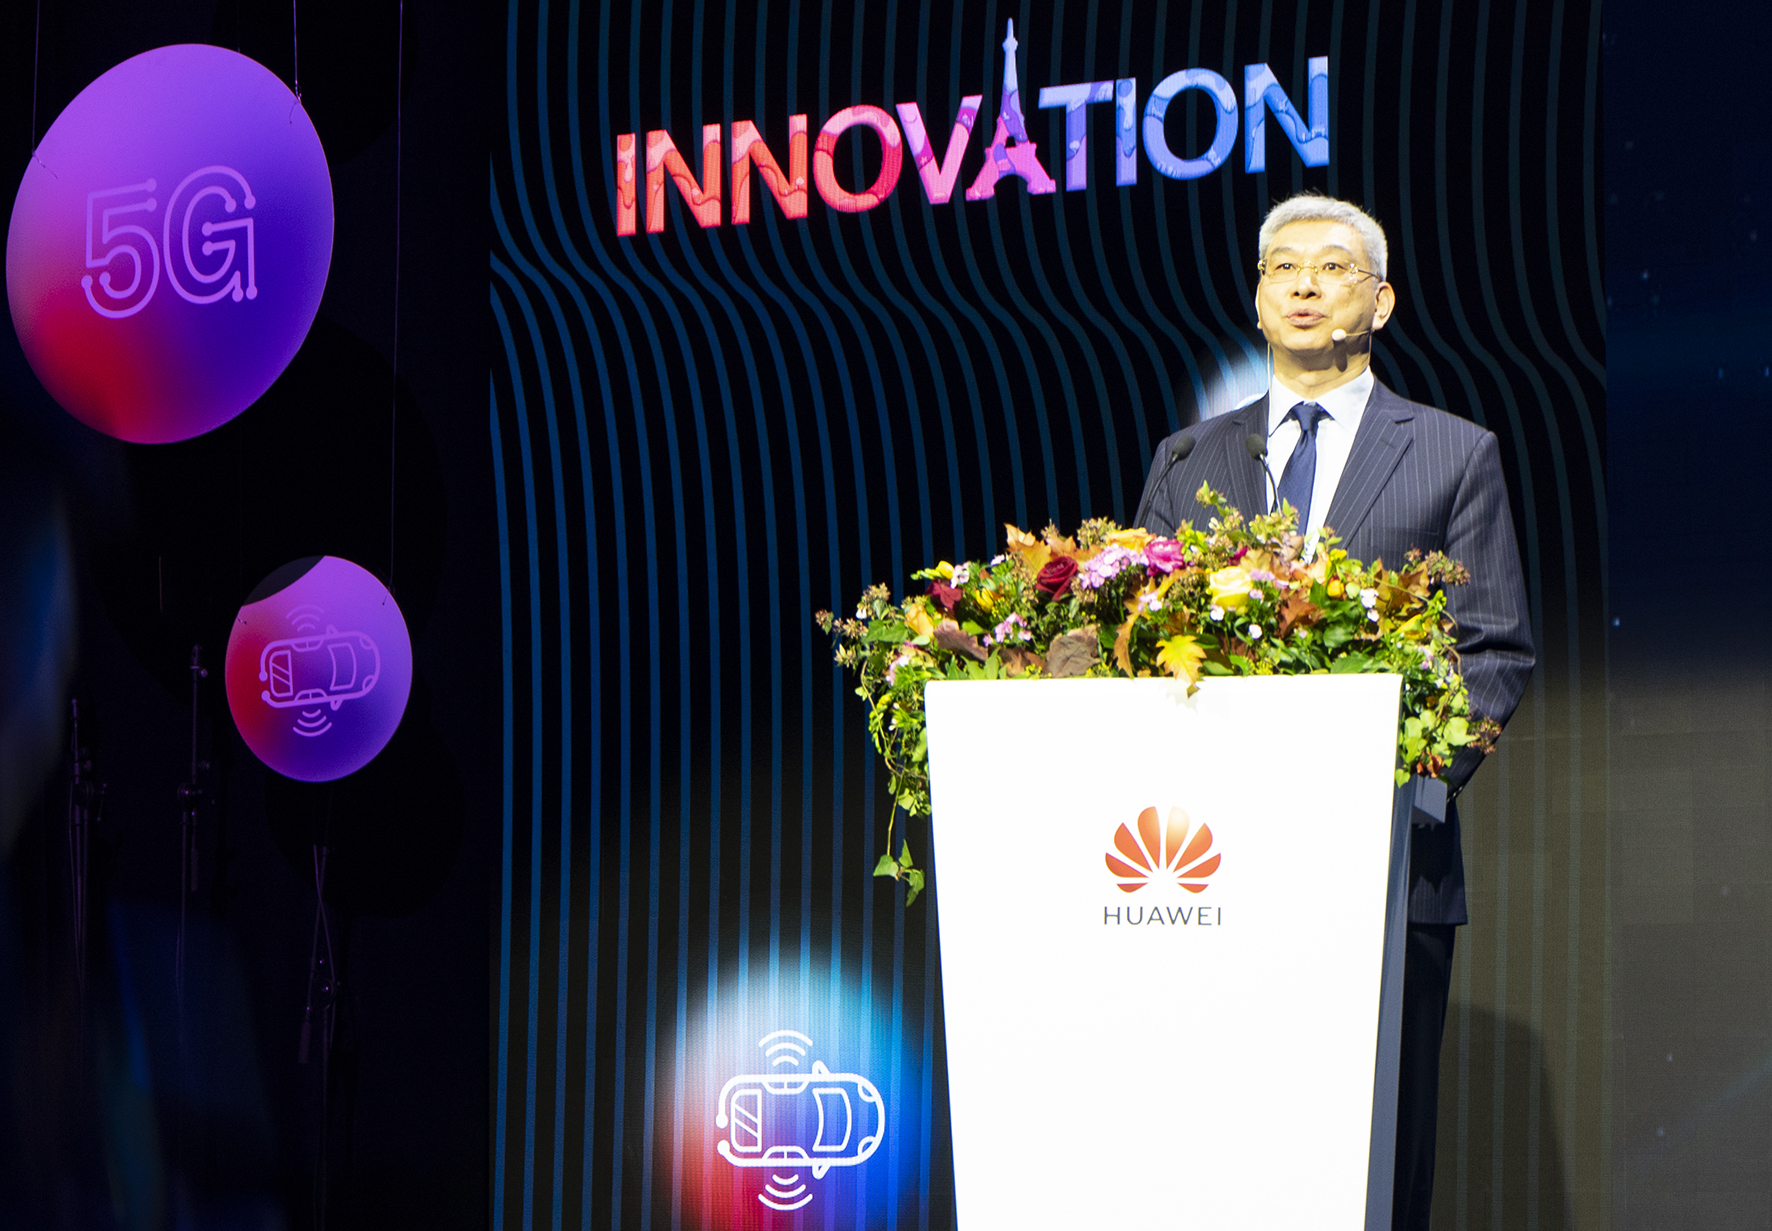 William Szu a Huawei párizsi Innovation konferenciájának a megnyitóján.